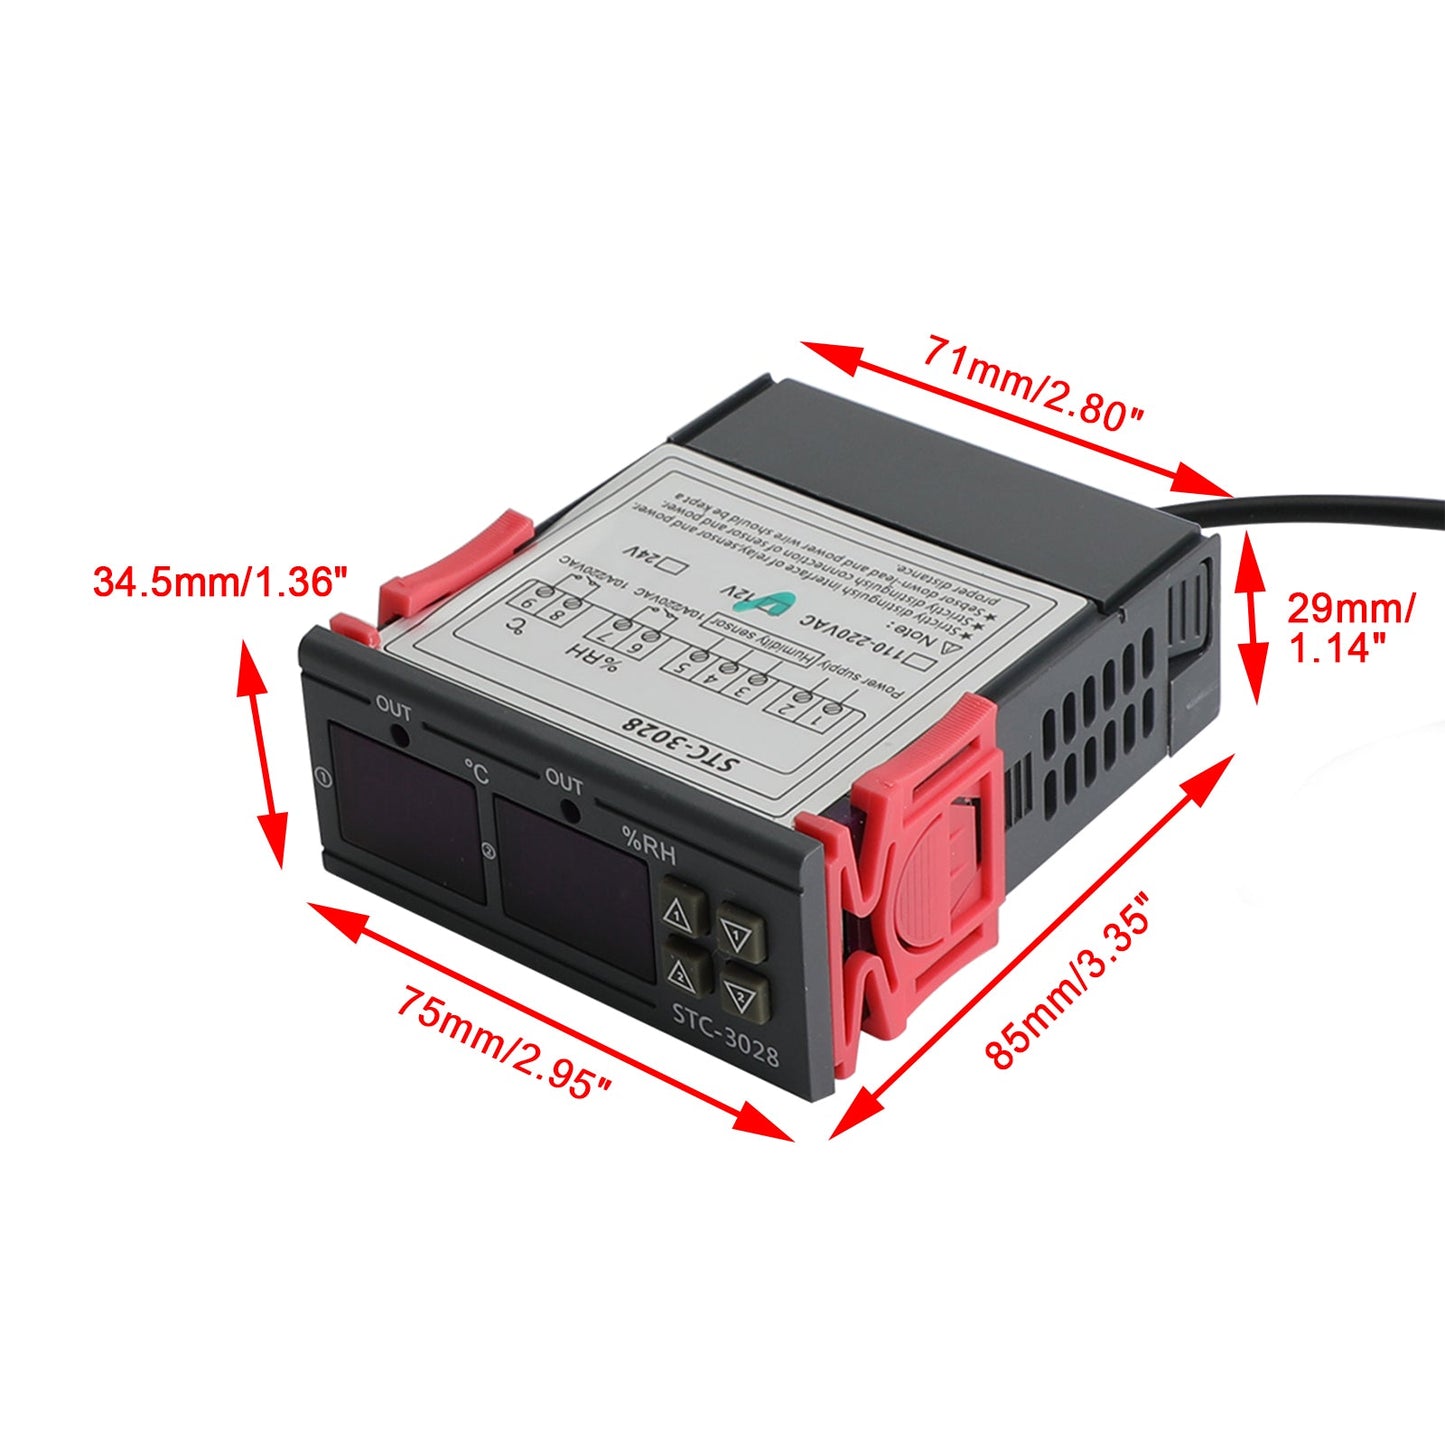 STC-3028 Contrôleur numérique de température et d'humidité à double affichage, thermostat + sonde